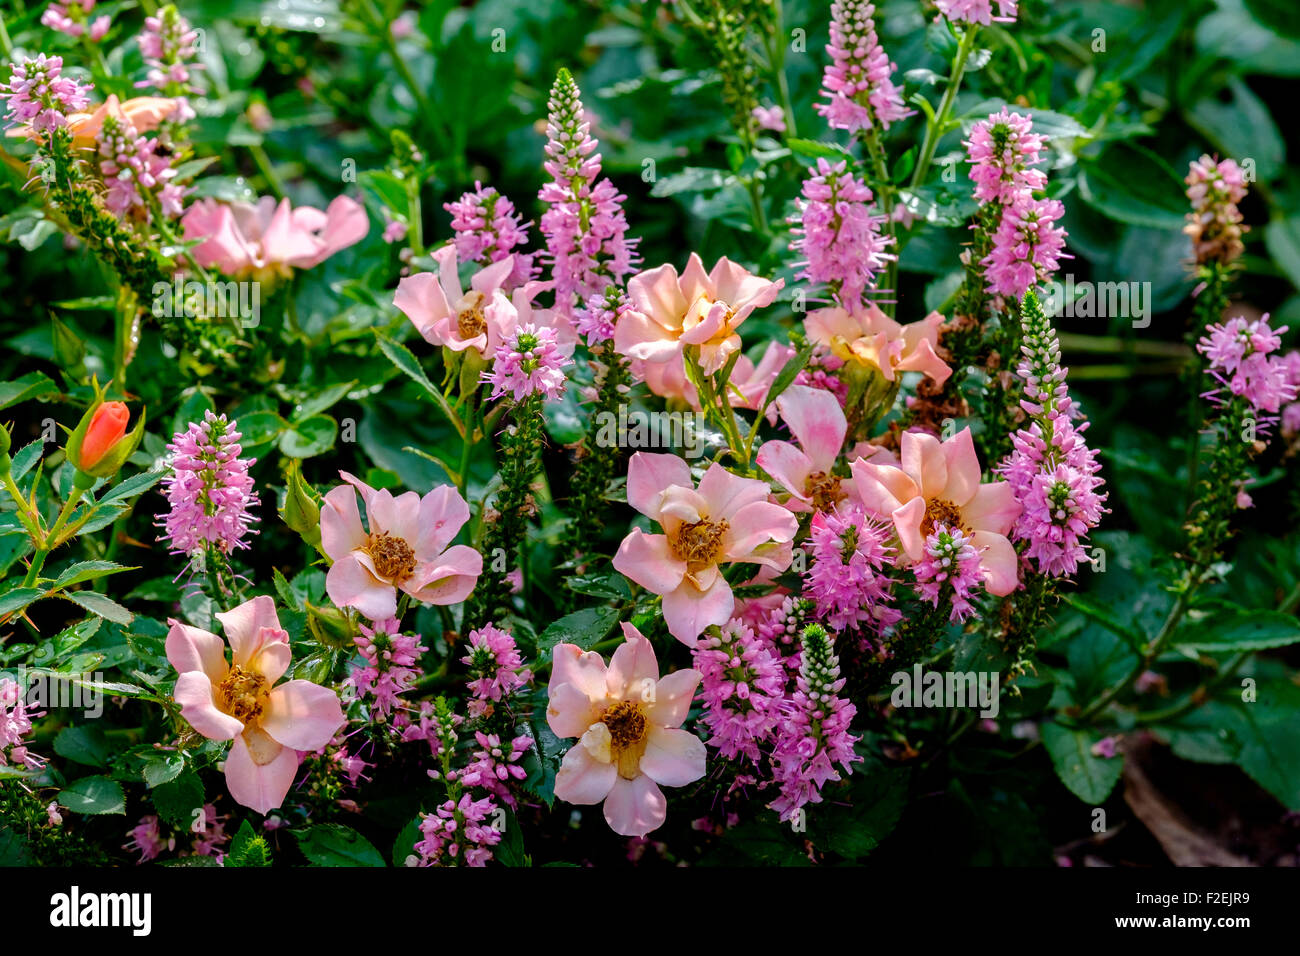 Tapa de tierra rosa,Rosa feliz Chappy, Rosa Interhappy PP19646. Un bajo crecimiento que parece una rosa rosa silvestre. Oklahoma, Estados Unidos. Foto de stock